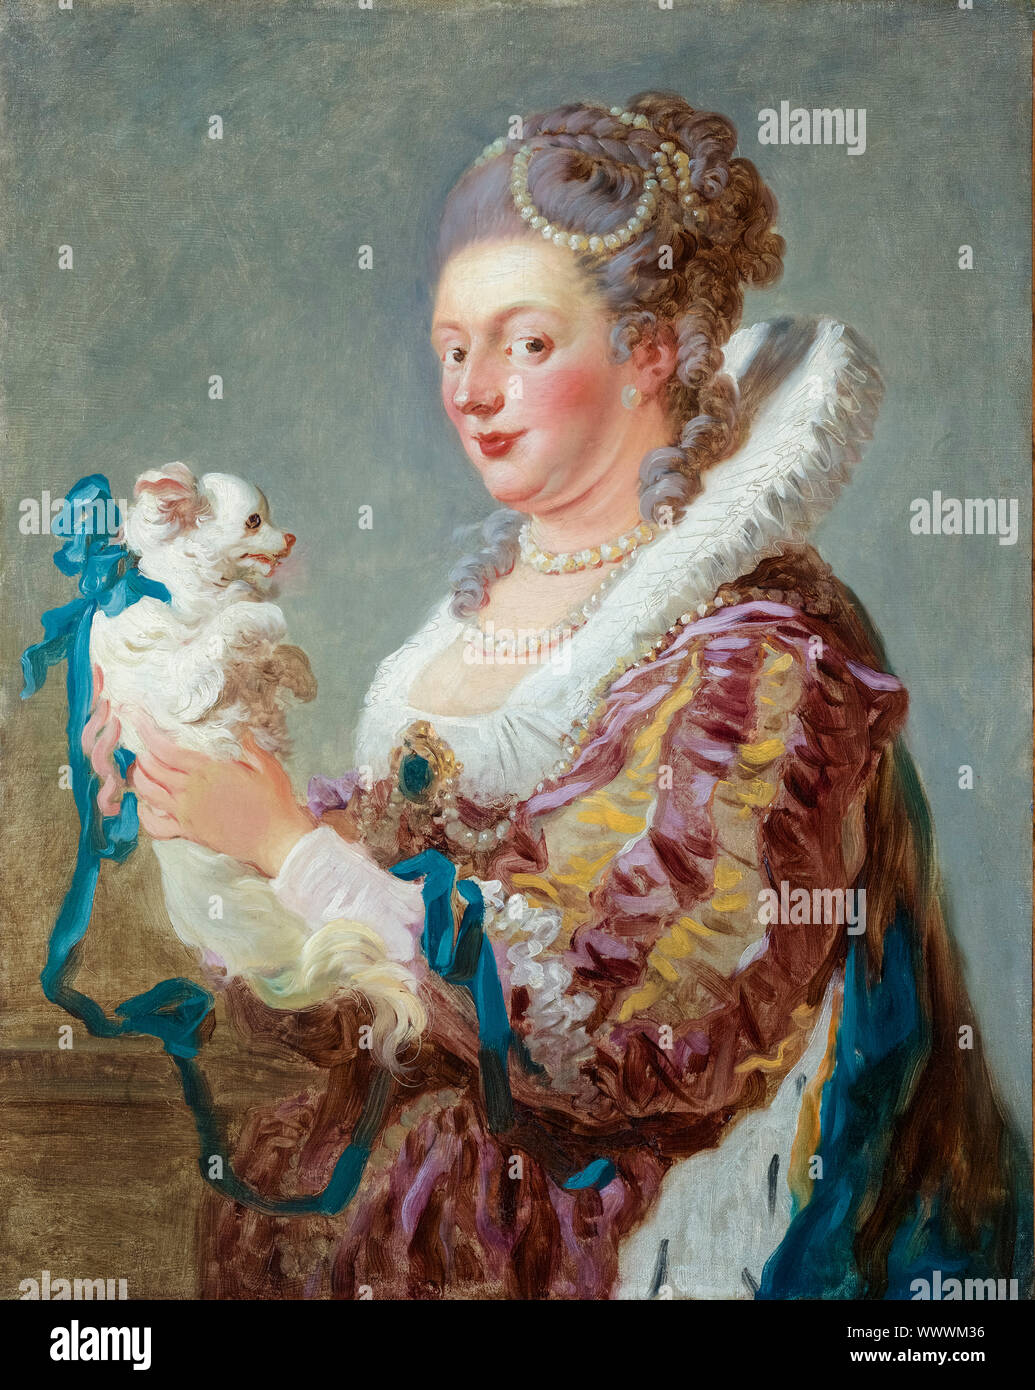 Jean-Honoré Fragonard, une femme avec un chien, peinture, vers 1769 Banque D'Images